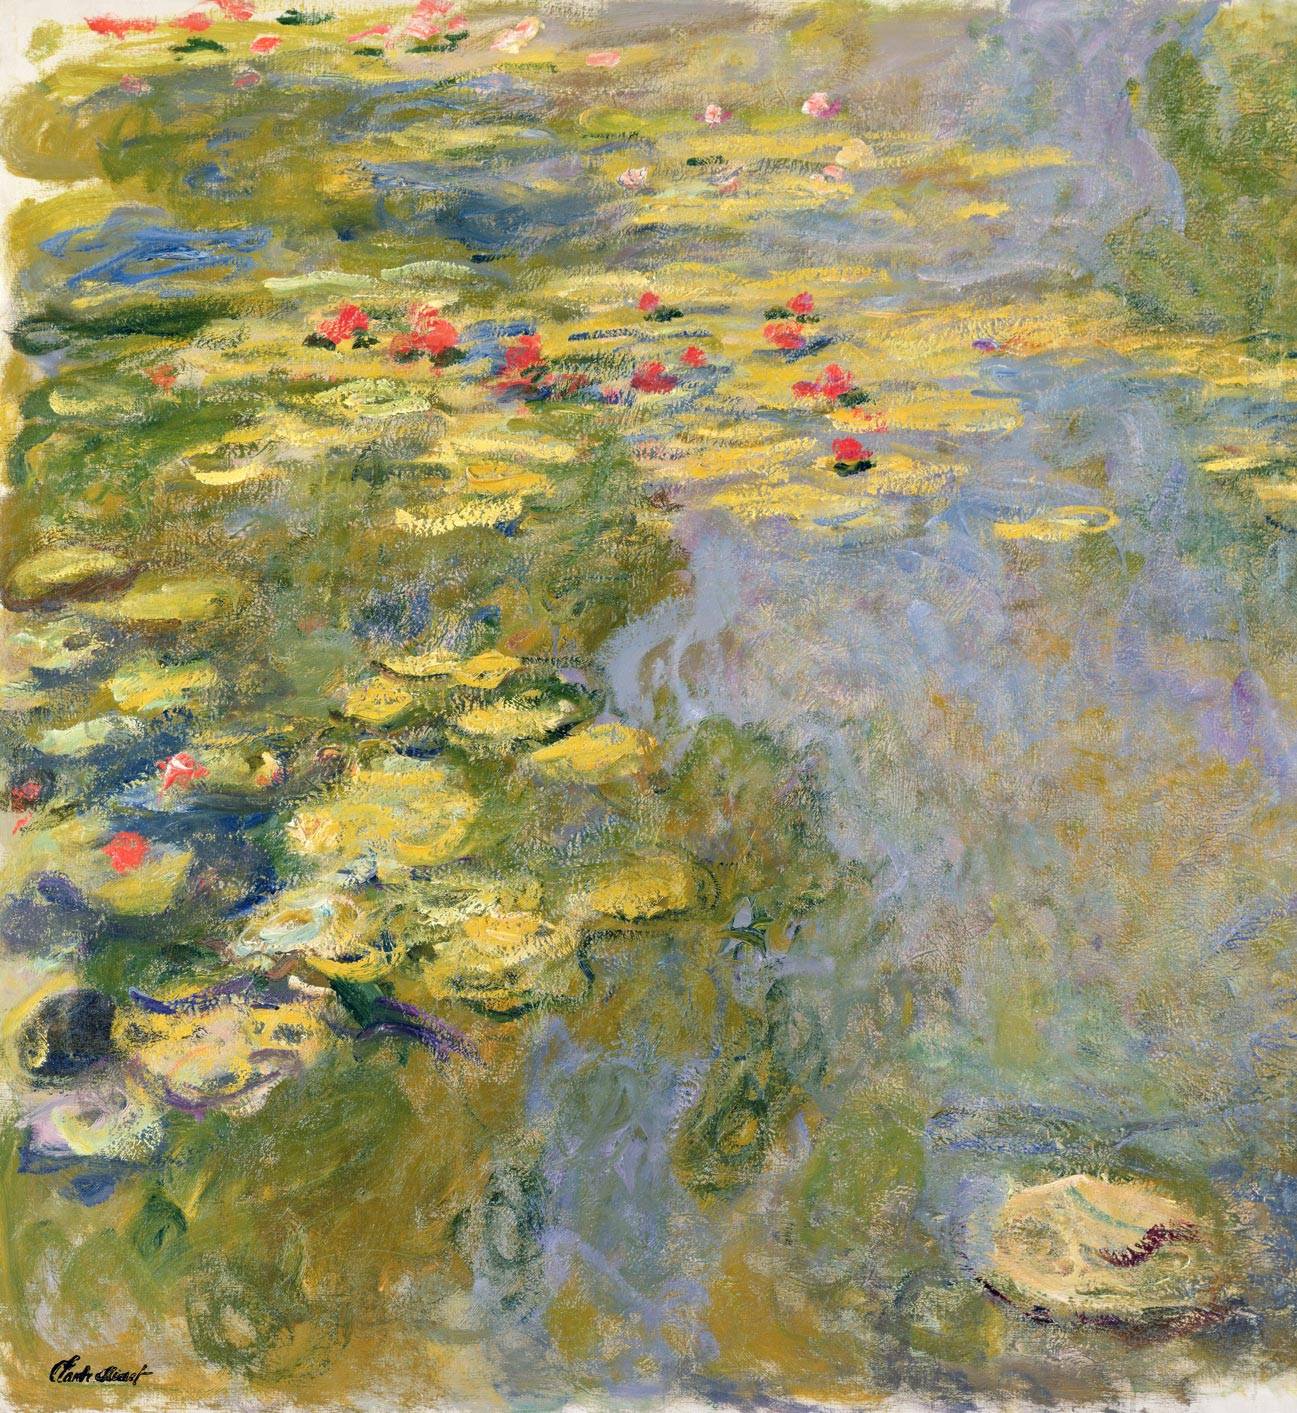 Claude Monet, Le Bassin aux nymphéas, 1917-1919

Huile sur toile, 130 x 120 cm
Inv. 5165
Paris, musée Marmottan Monet
© Bridgeman Images